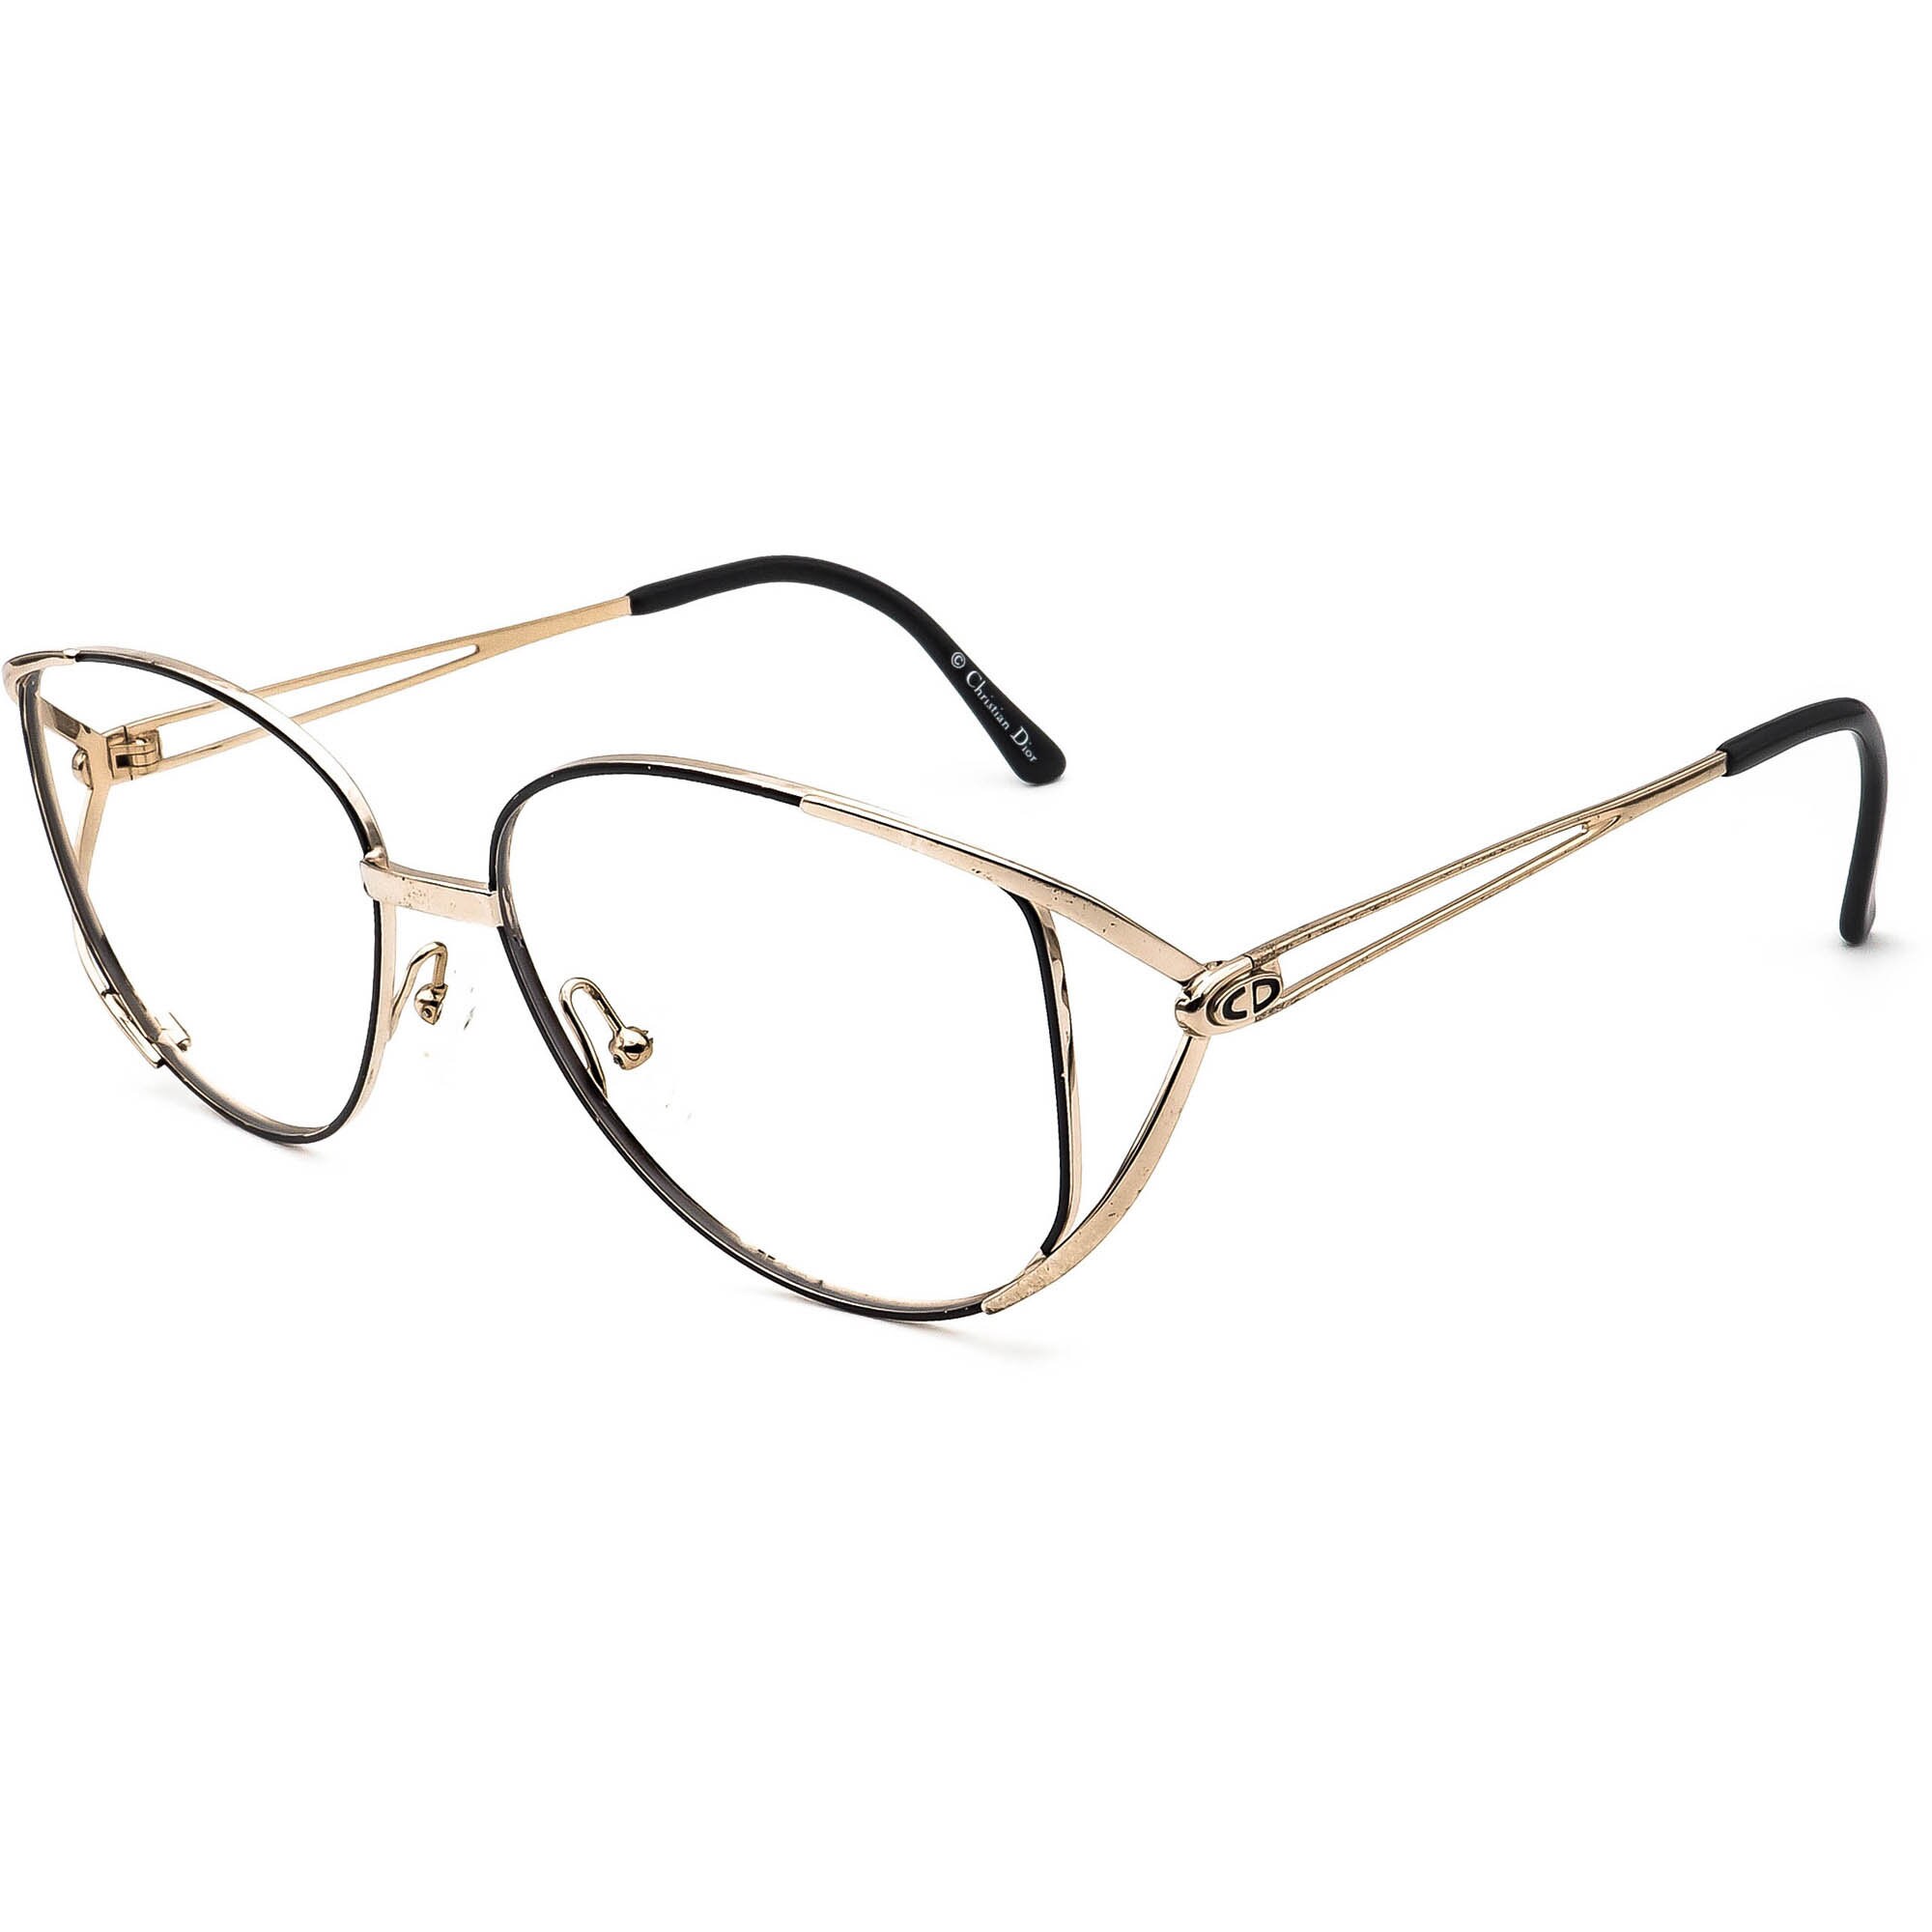 Christian Dior Eyeglasses 2646 49 Gold/black Metal Frame - Etsy